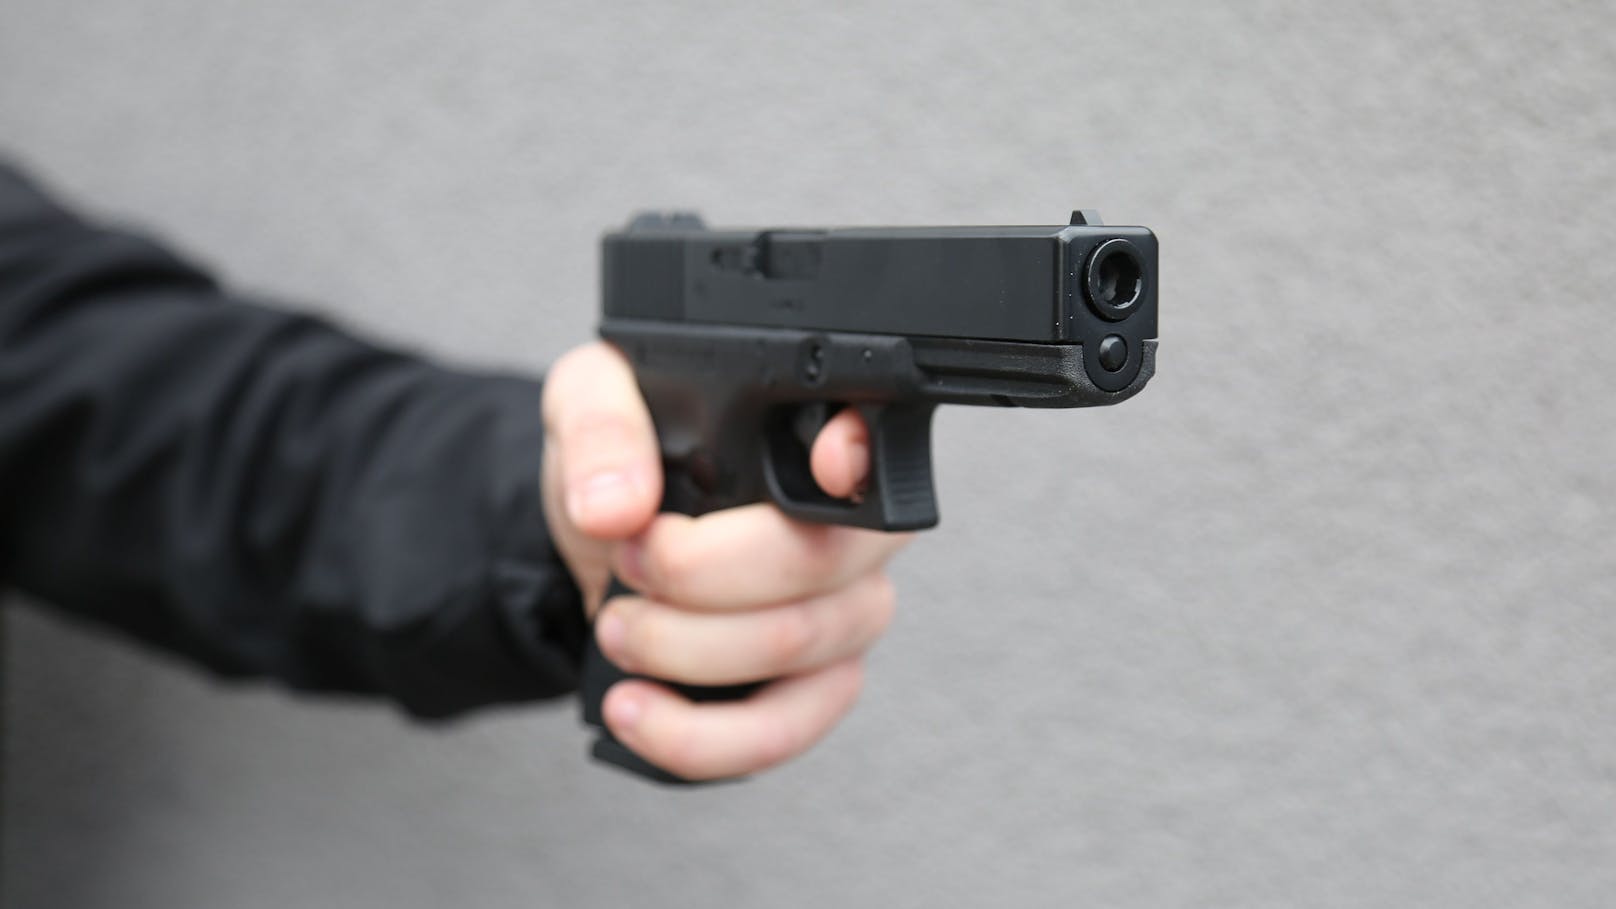 Lokalverkauf geht schief – Besitzer mit Waffe bedroht